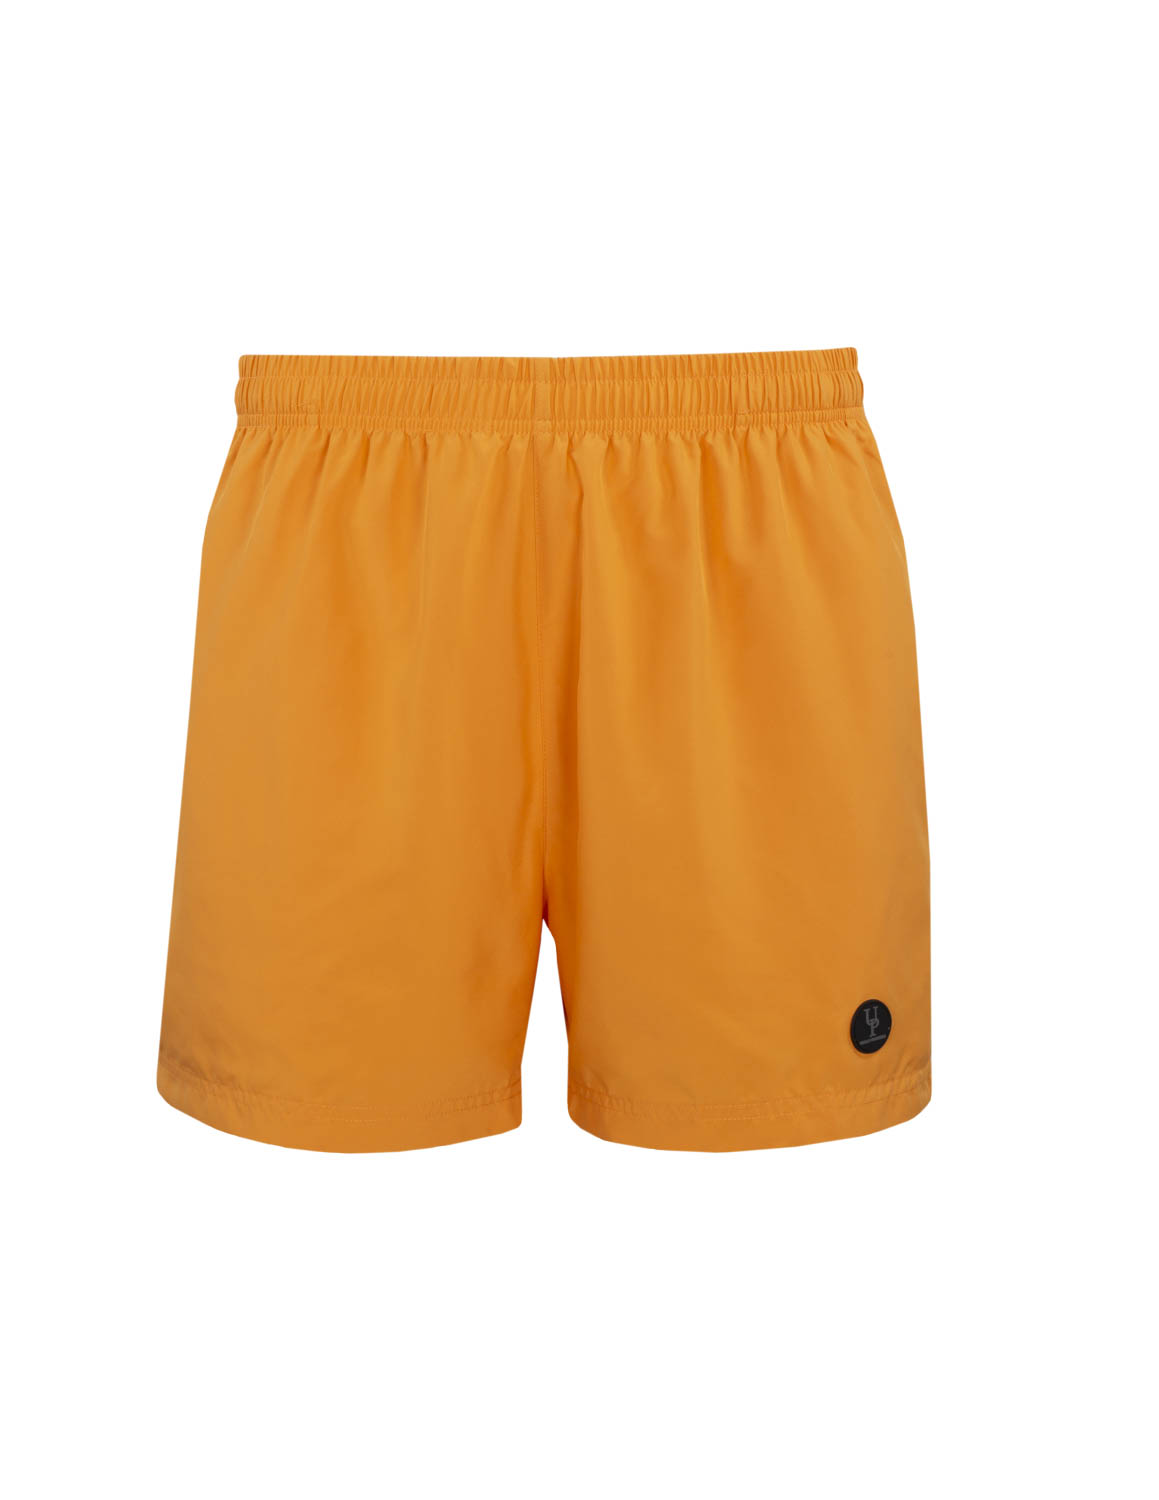 Hawaii Shorts Orange - Urban Pioneers